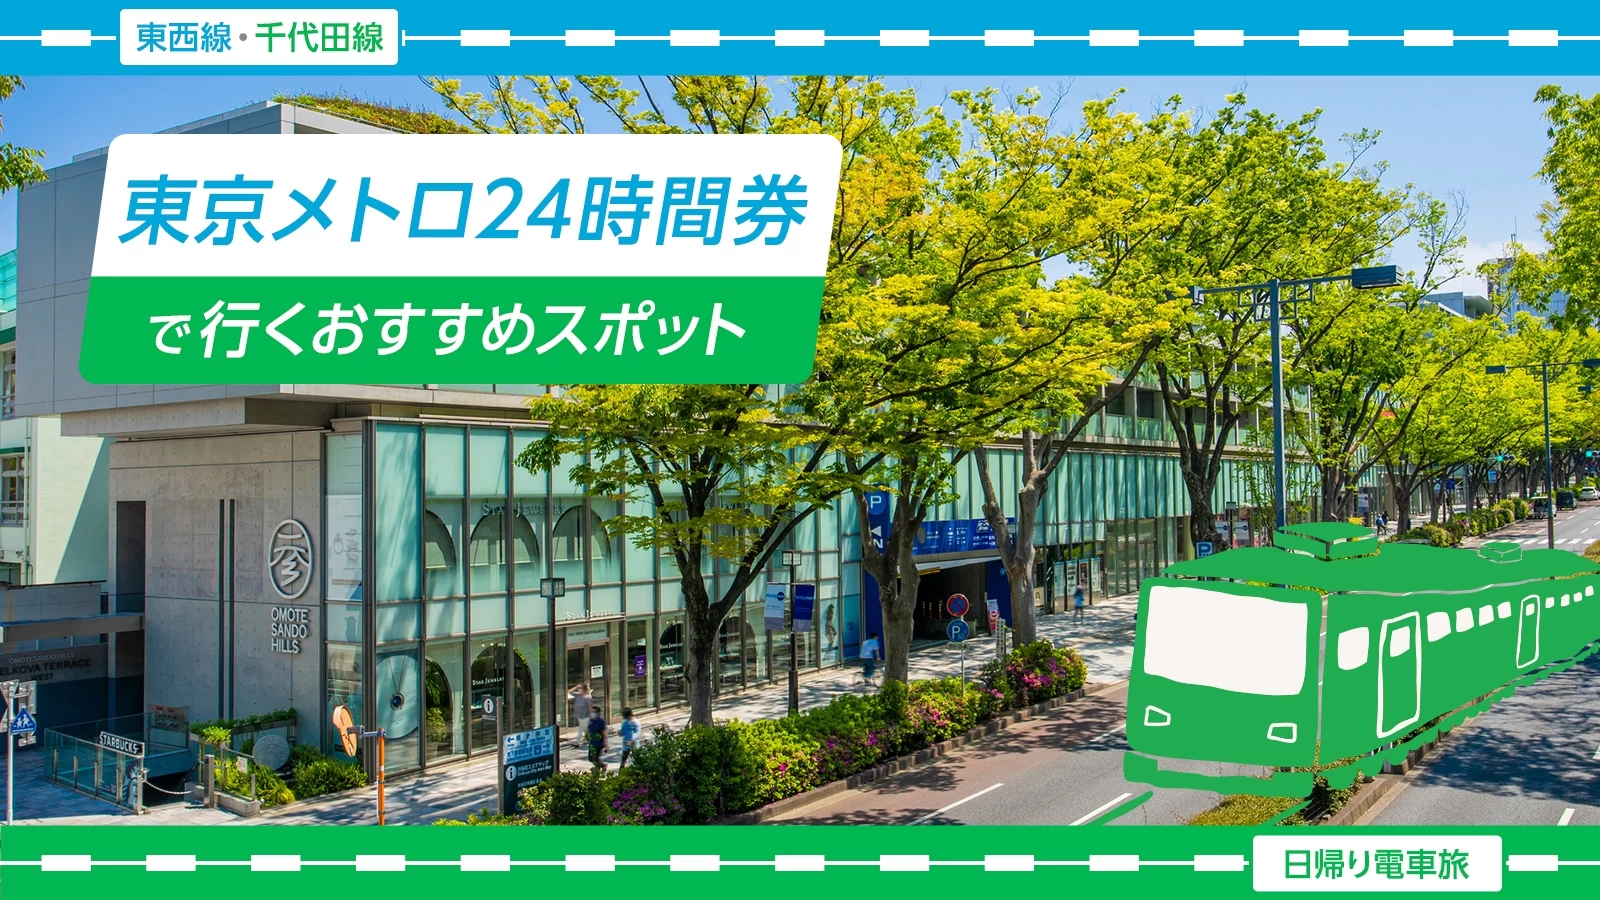 【日帰り電車旅・東西線・千代田線】東京メトロ24時間券で行くおすすめスポット11選